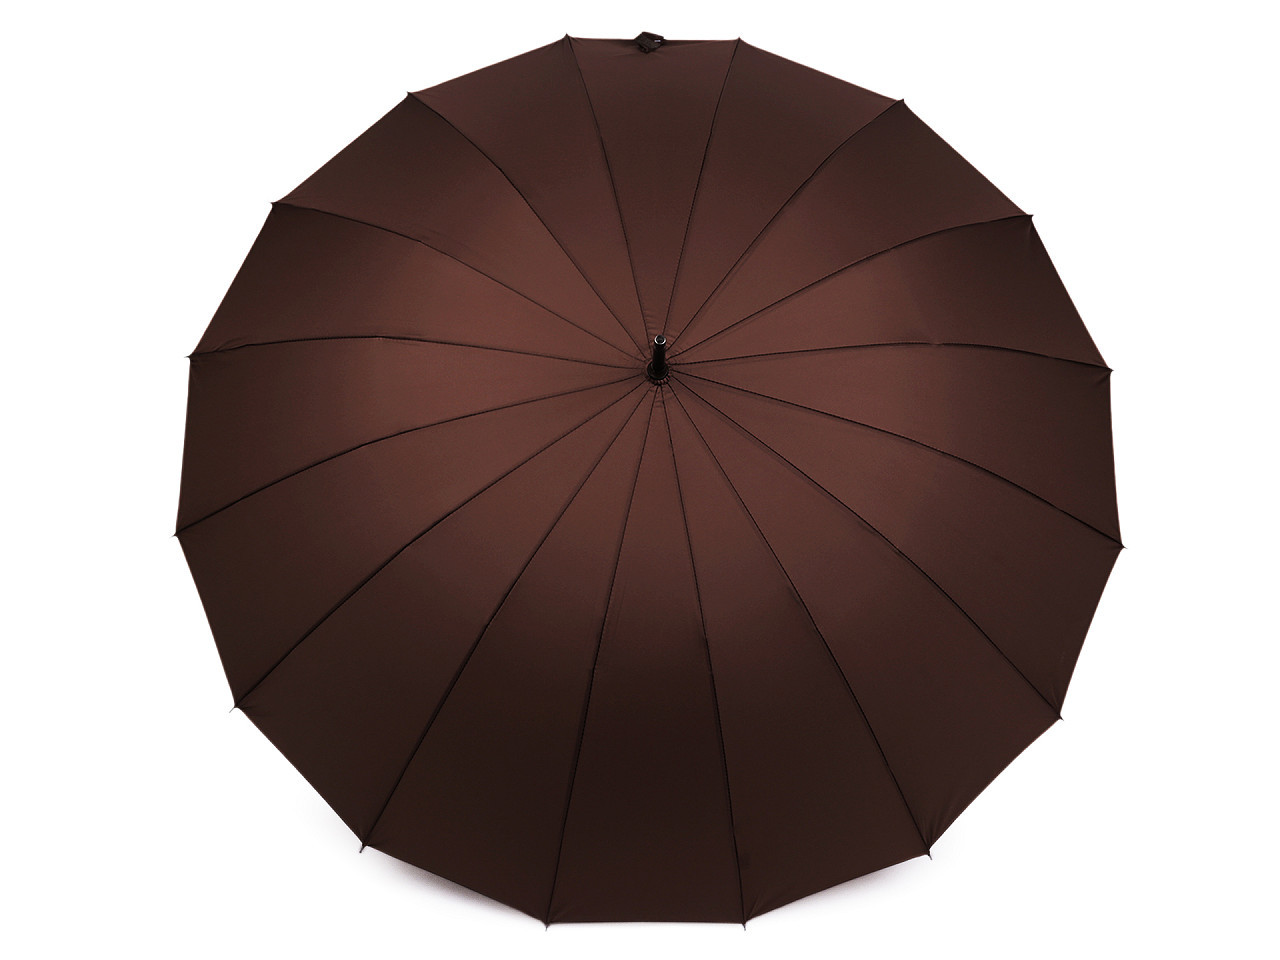 Velký rodinný deštník s dřevěnou rukojetí, barva 3 hnědá